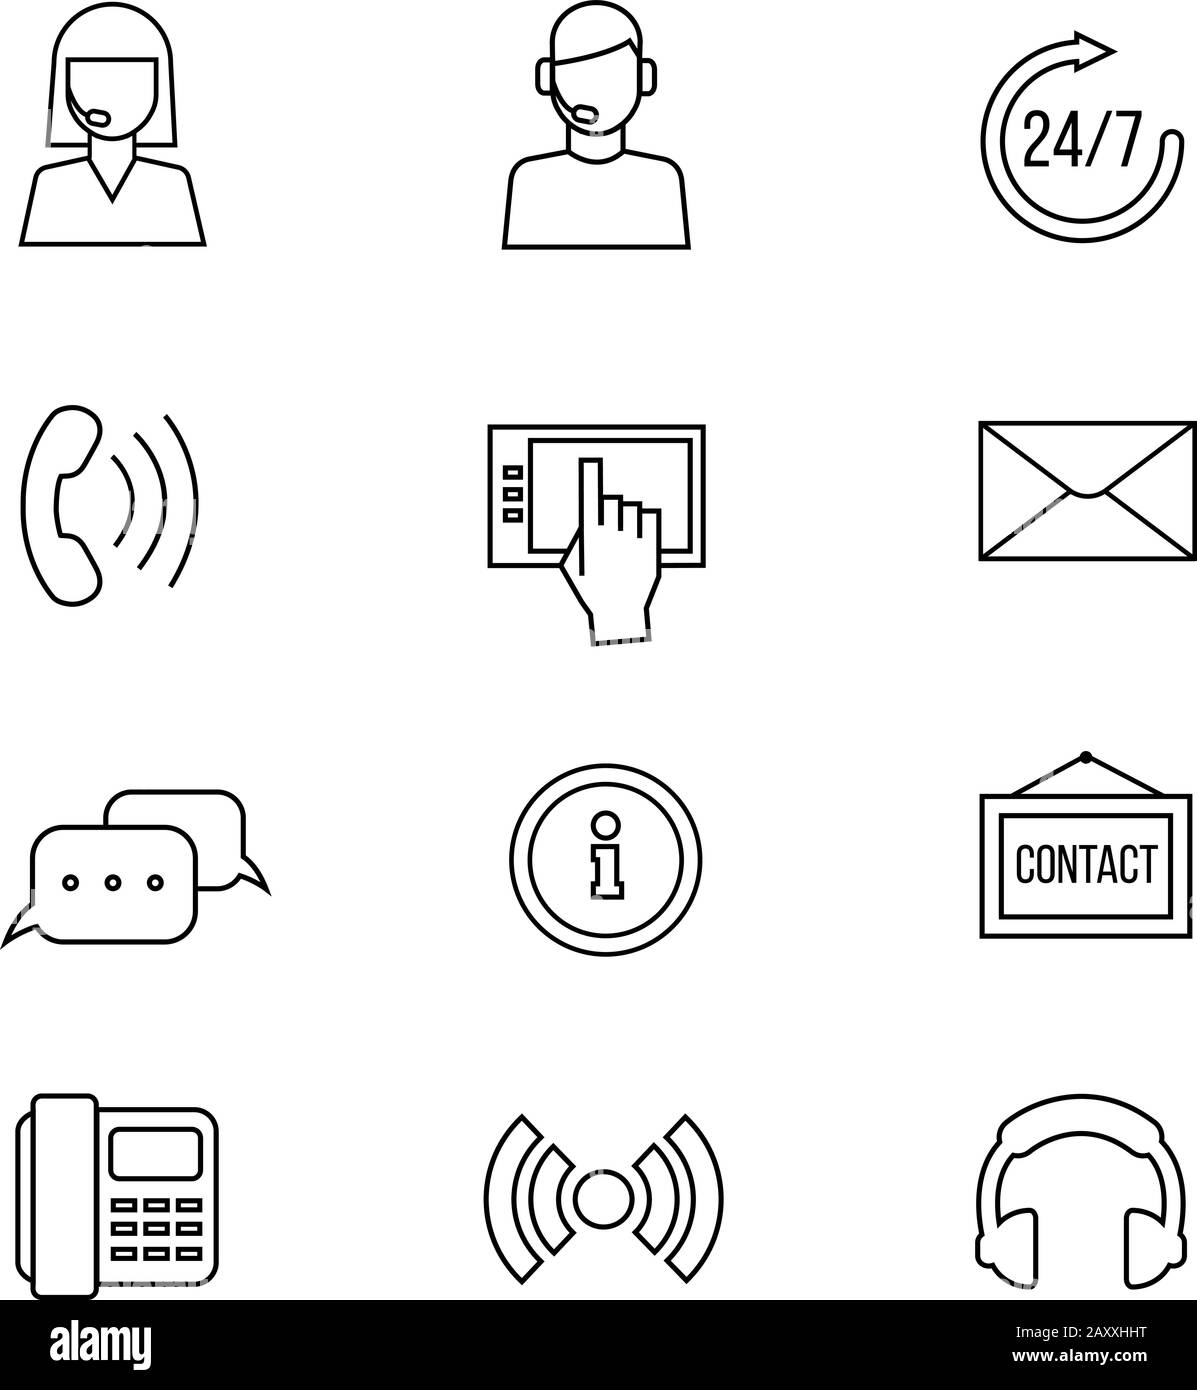 Icone della linea vettoriale del contatto o del supporto. Comunicare la helpline e il supporto online, l'operatore di assistenza e i segnali di comunicazione Illustrazione Vettoriale